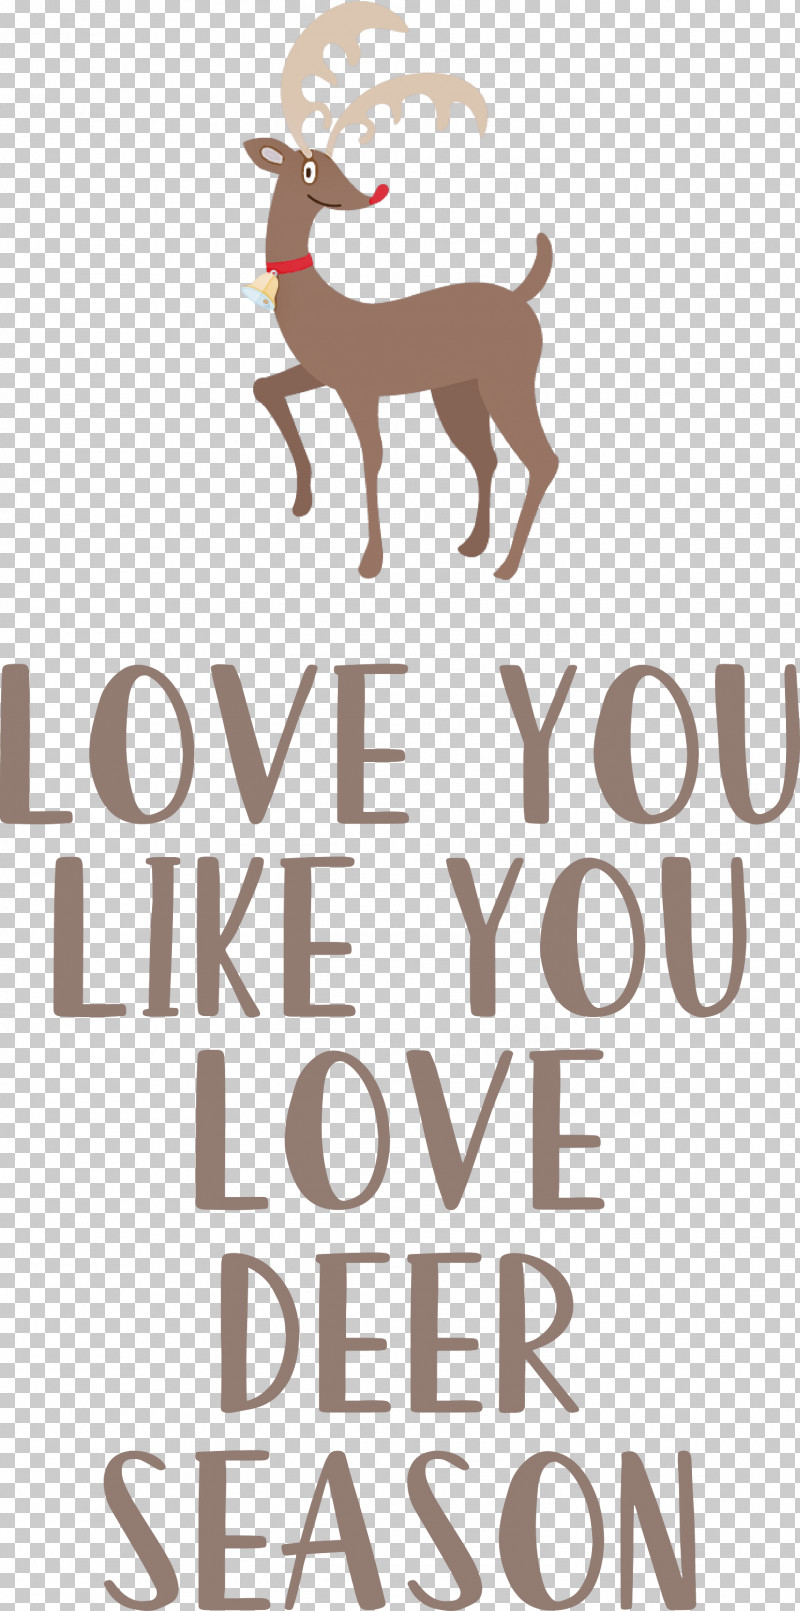 Love Deer Season PNG, Clipart, Deer, Geometry, Line, Logo, Love Free PNG Download